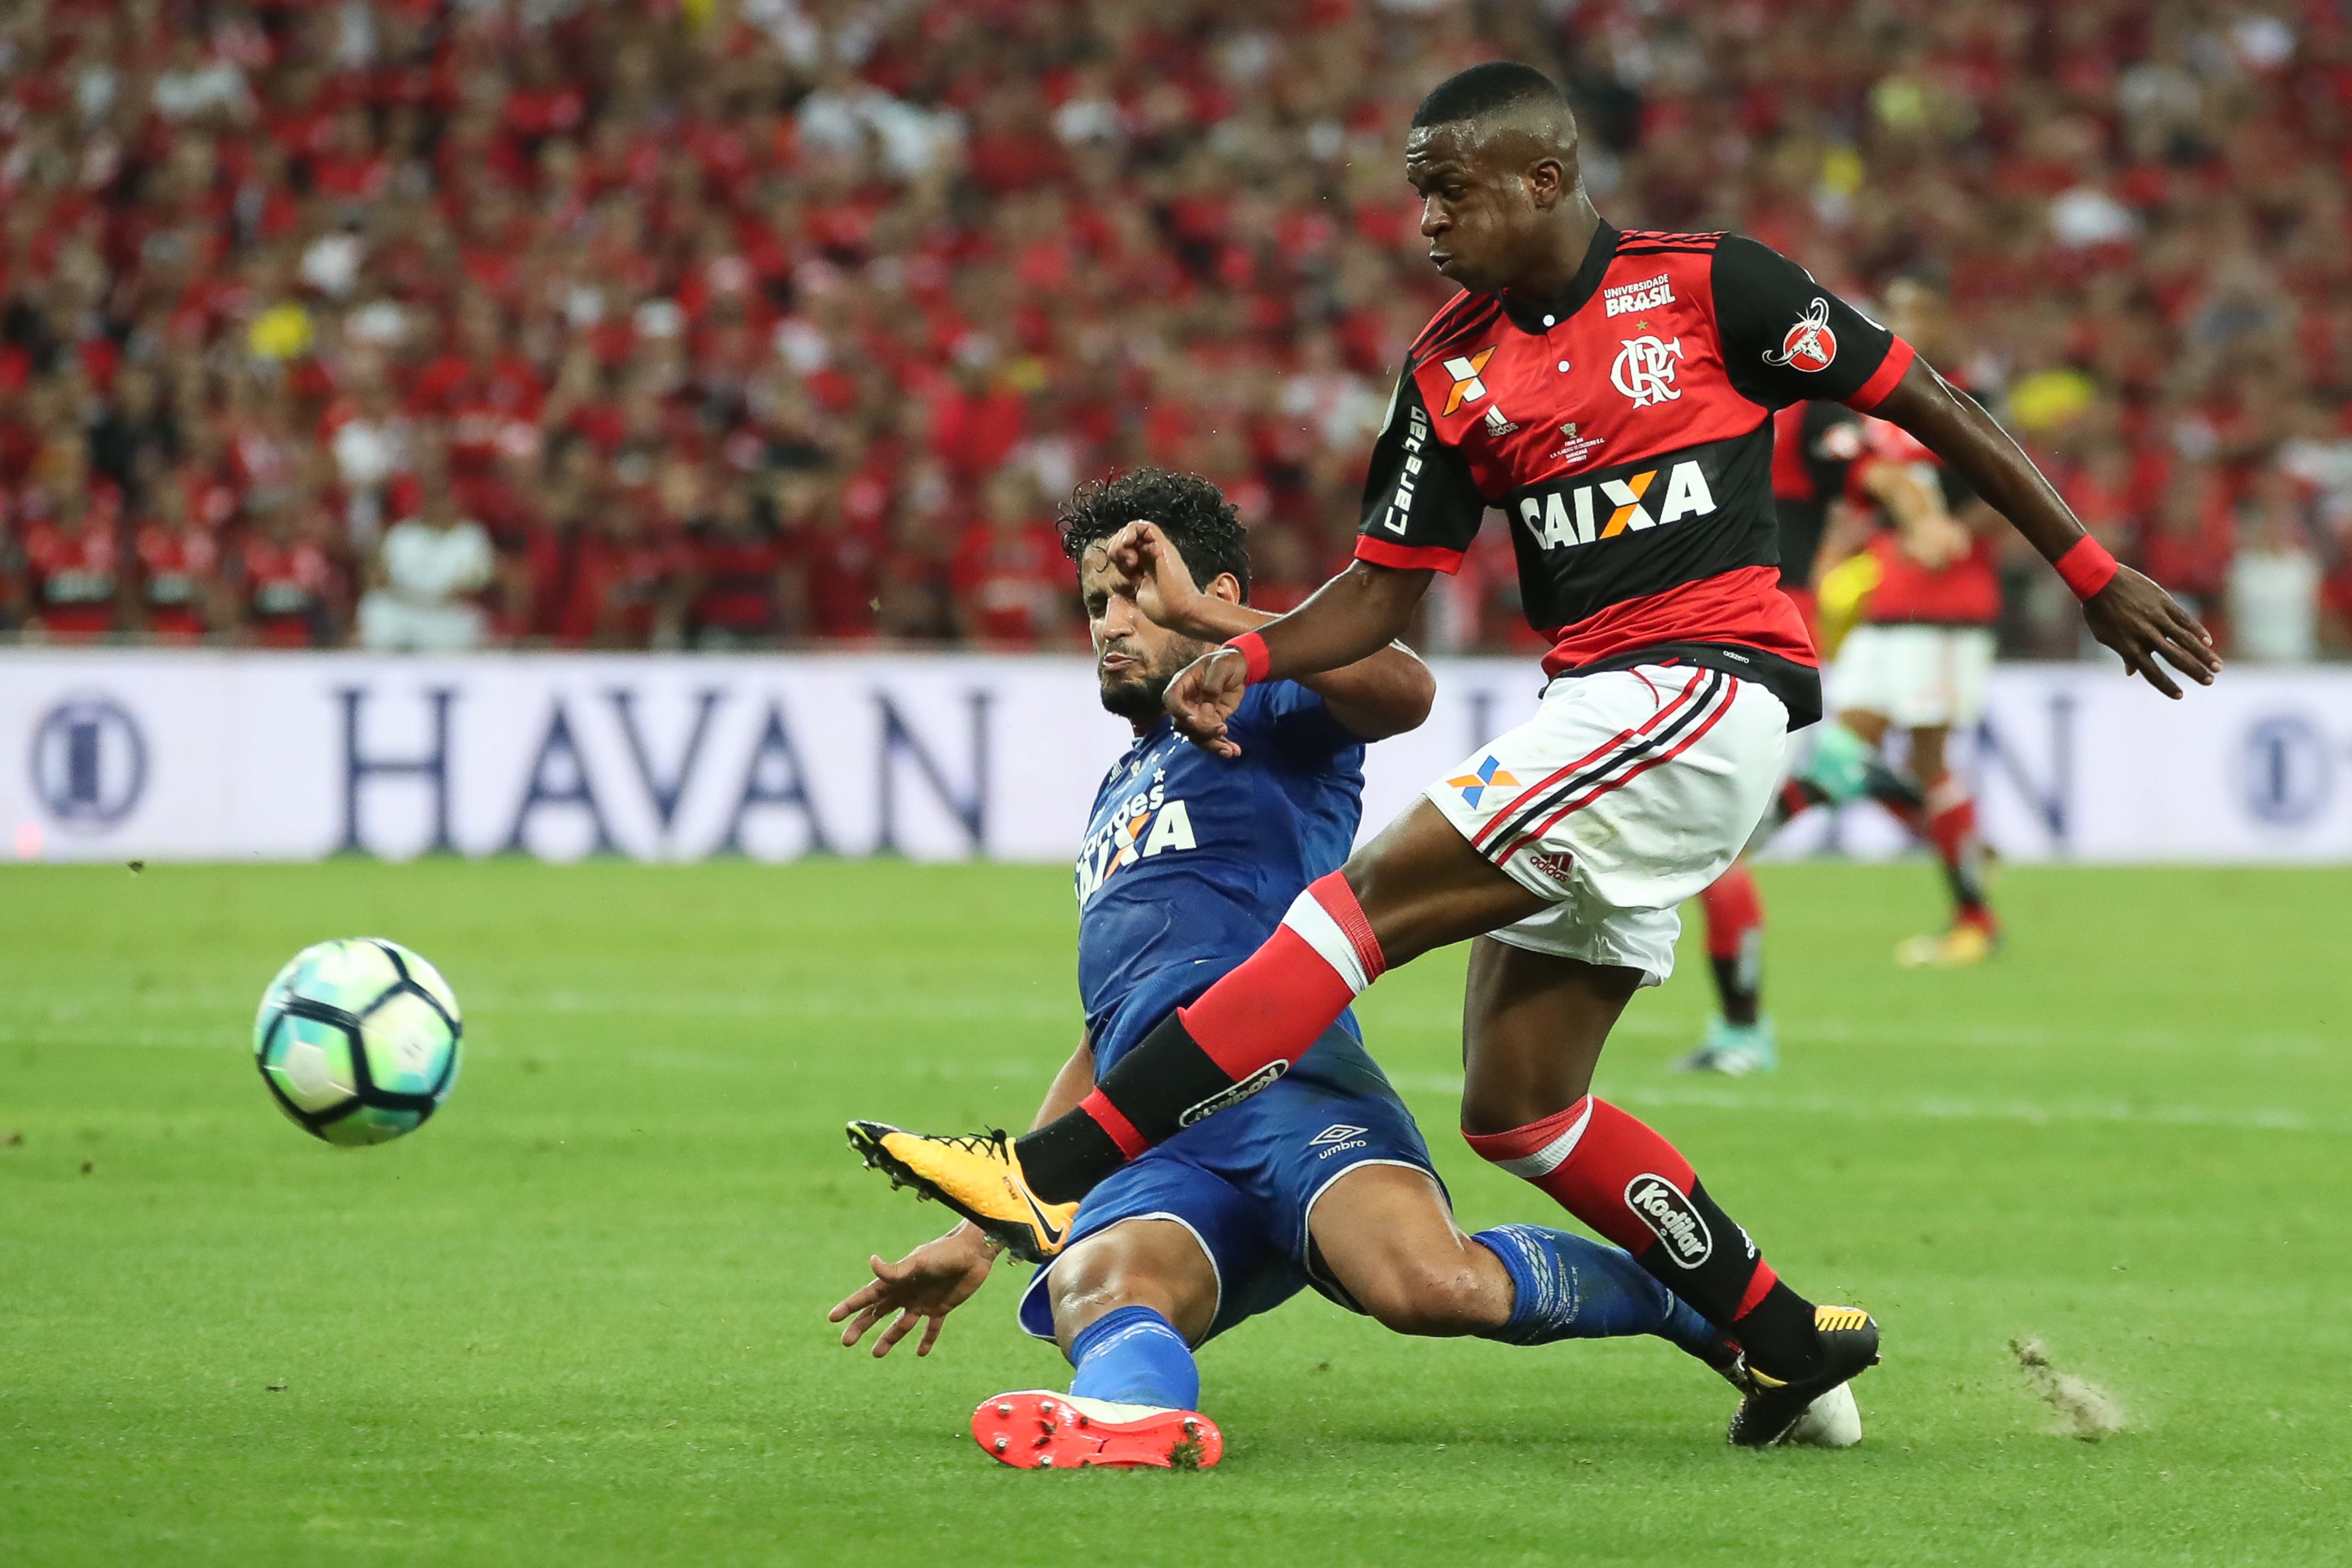 Flamengo usará camisa escrito: Todos com Vini Jr. em jogo contra o  Cruzeiro - Jogo24